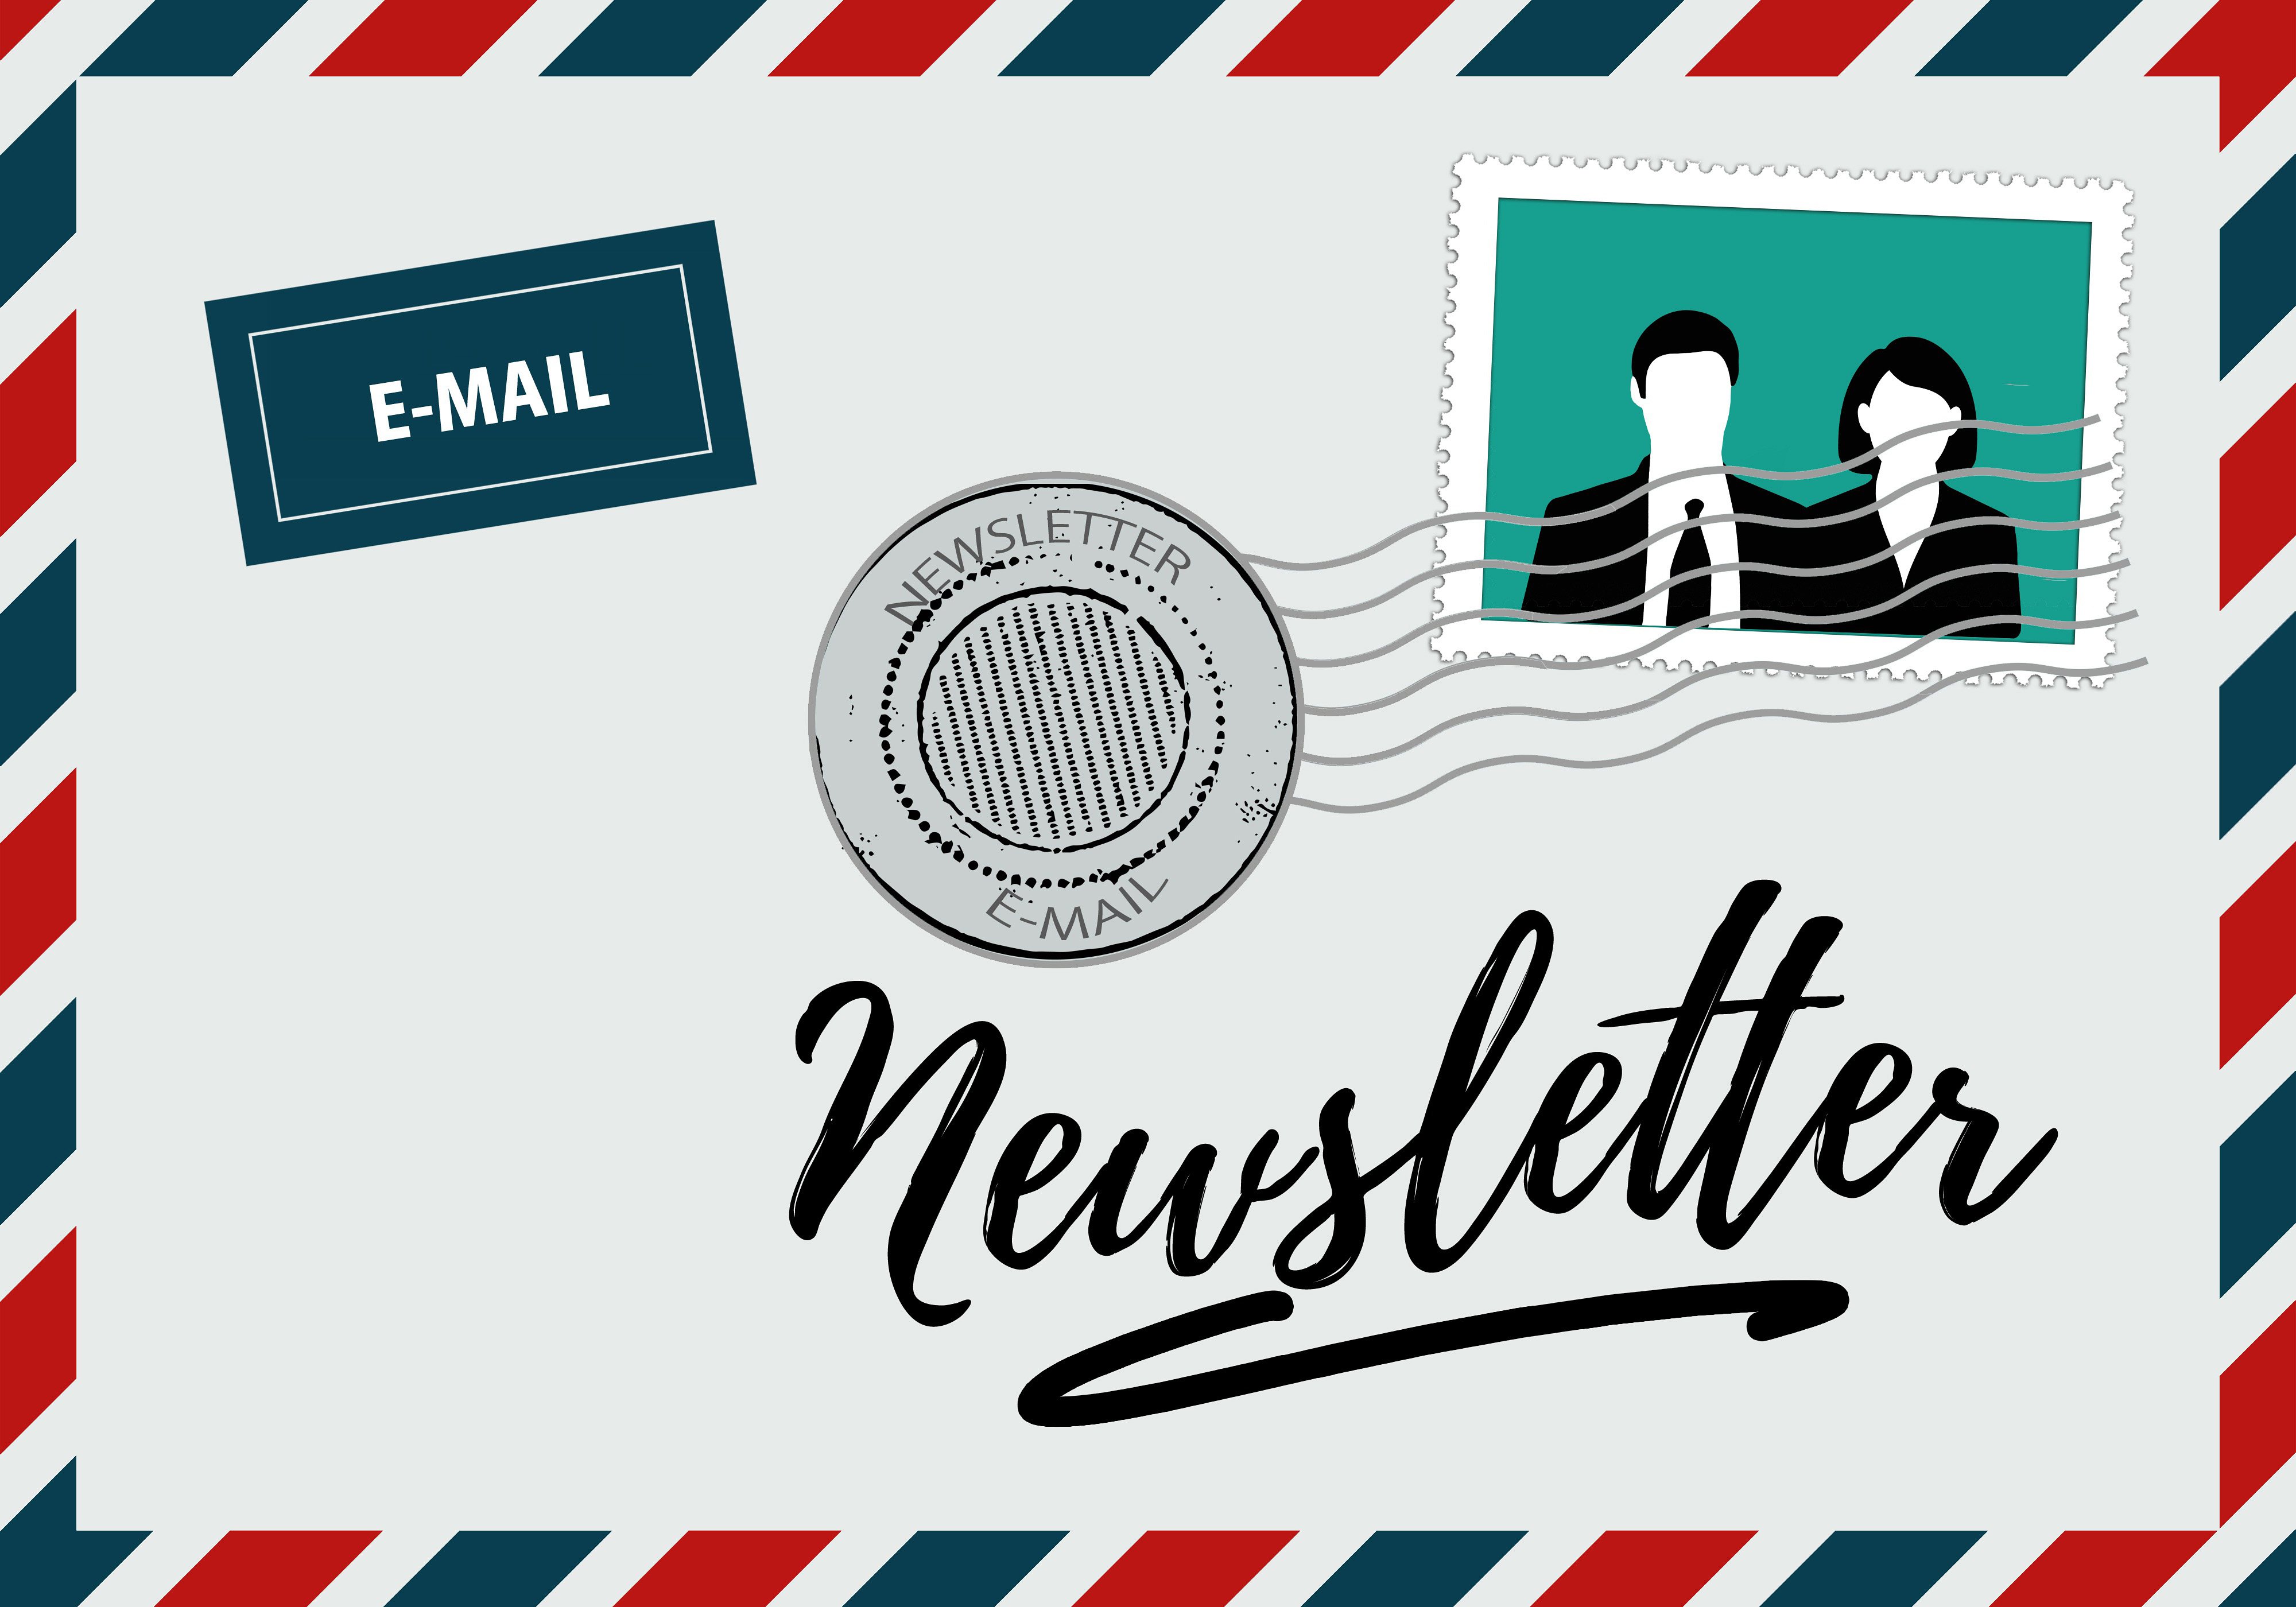 Symbolbild Newsletter: Zeichnung eines Briefumschlags mit der Aufschrift Newsletter, einer Briefmarke und einem Hinweis "E-Mail"